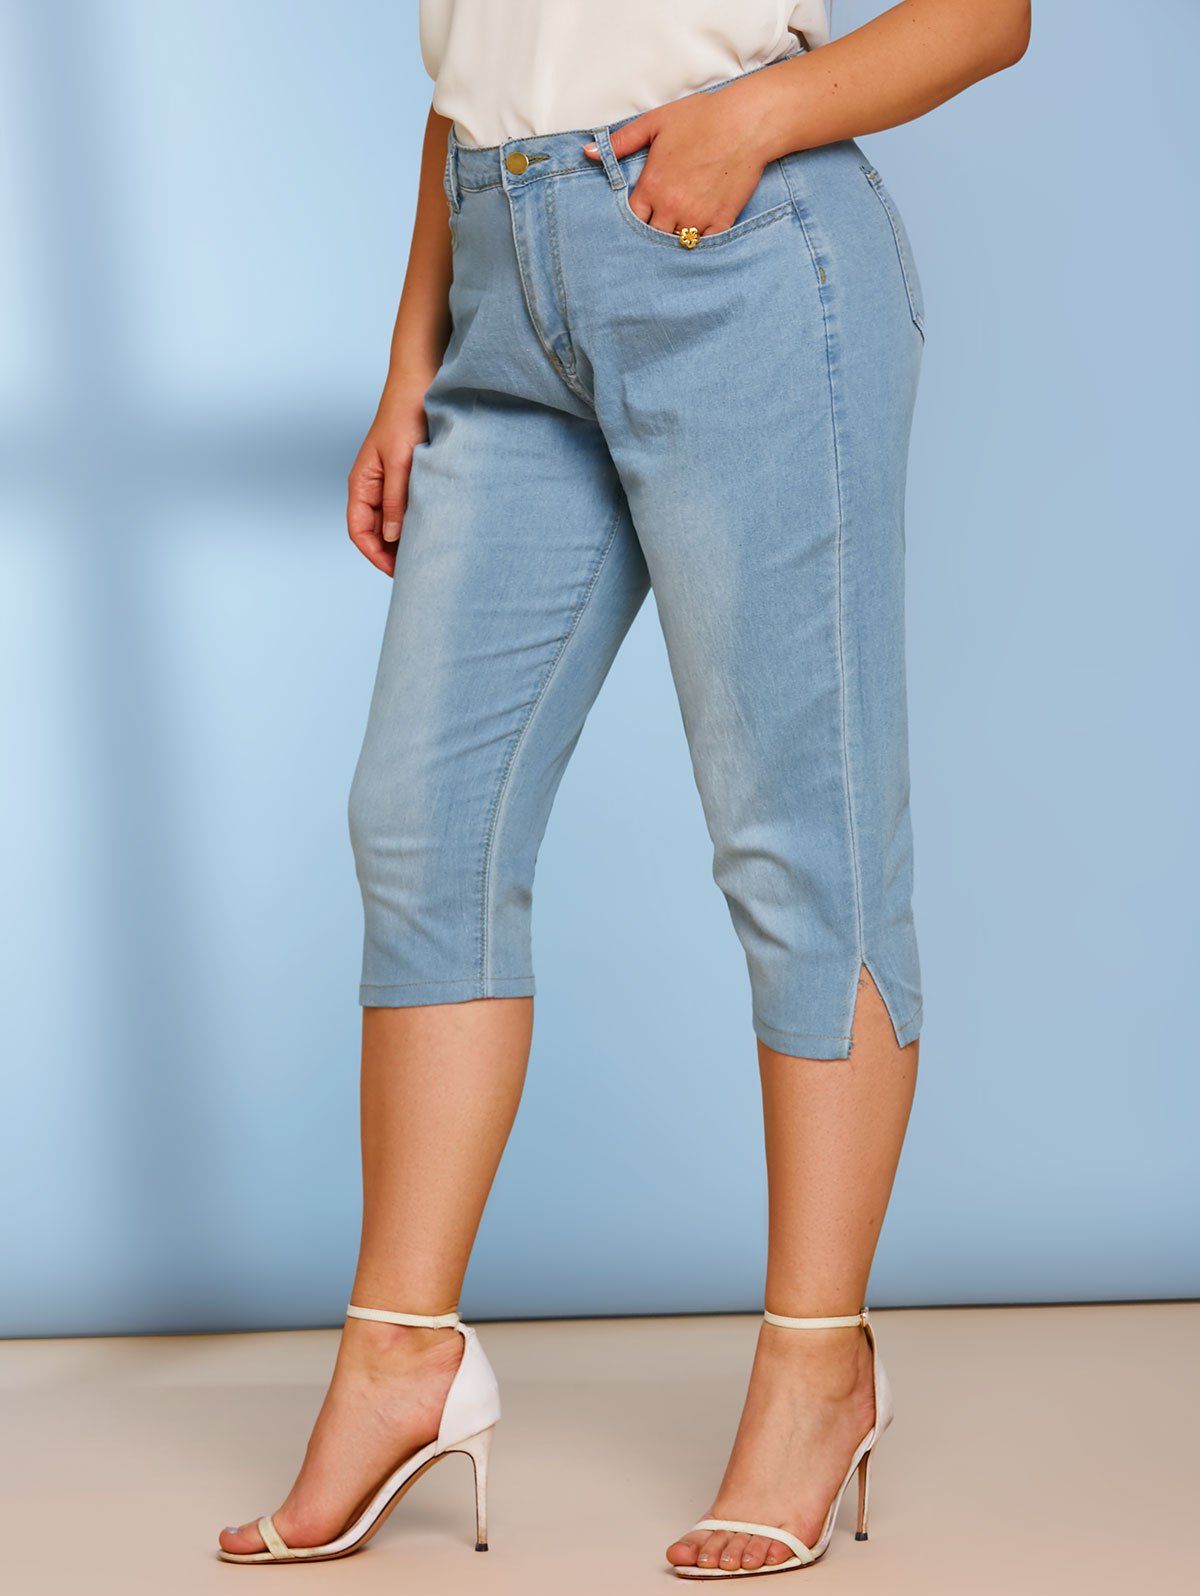 Plain Mid Rise Skinny Plus Size Capri Jeans - LIGHT BLUE 3XL